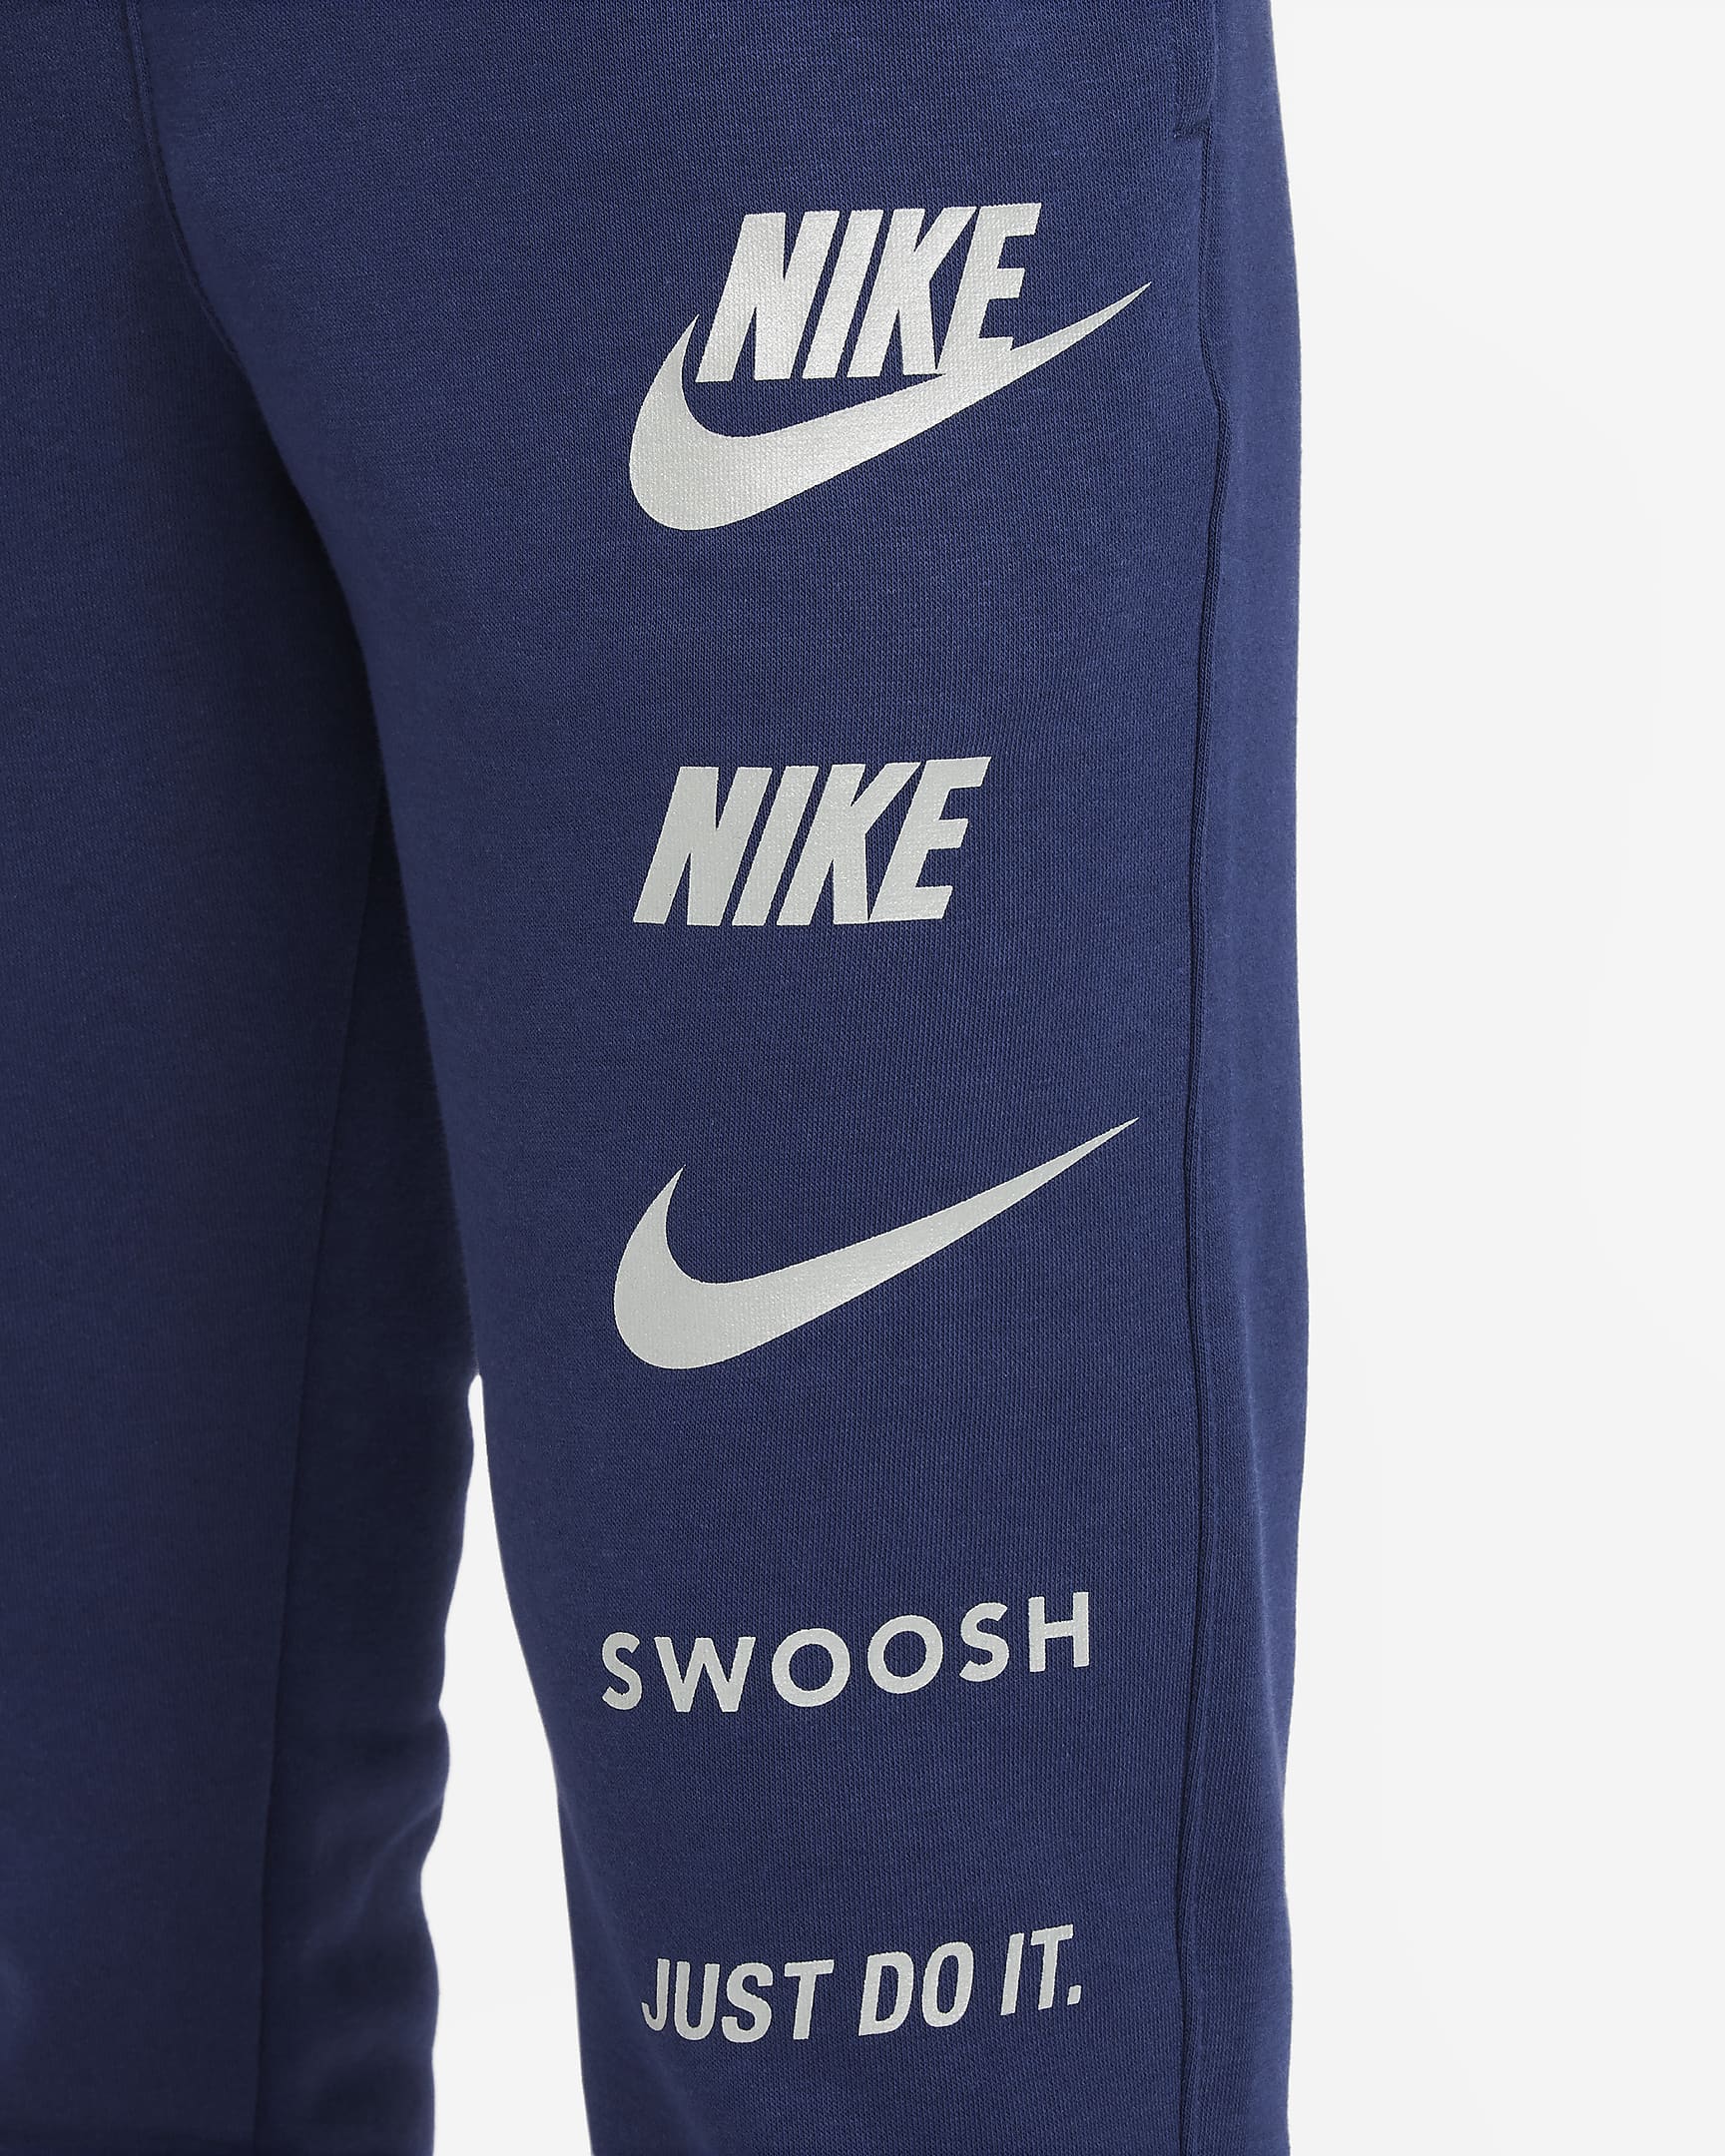 Nike Sportswear Older Kids' (Boys') Fleece Cargo Trousers. Nike UK